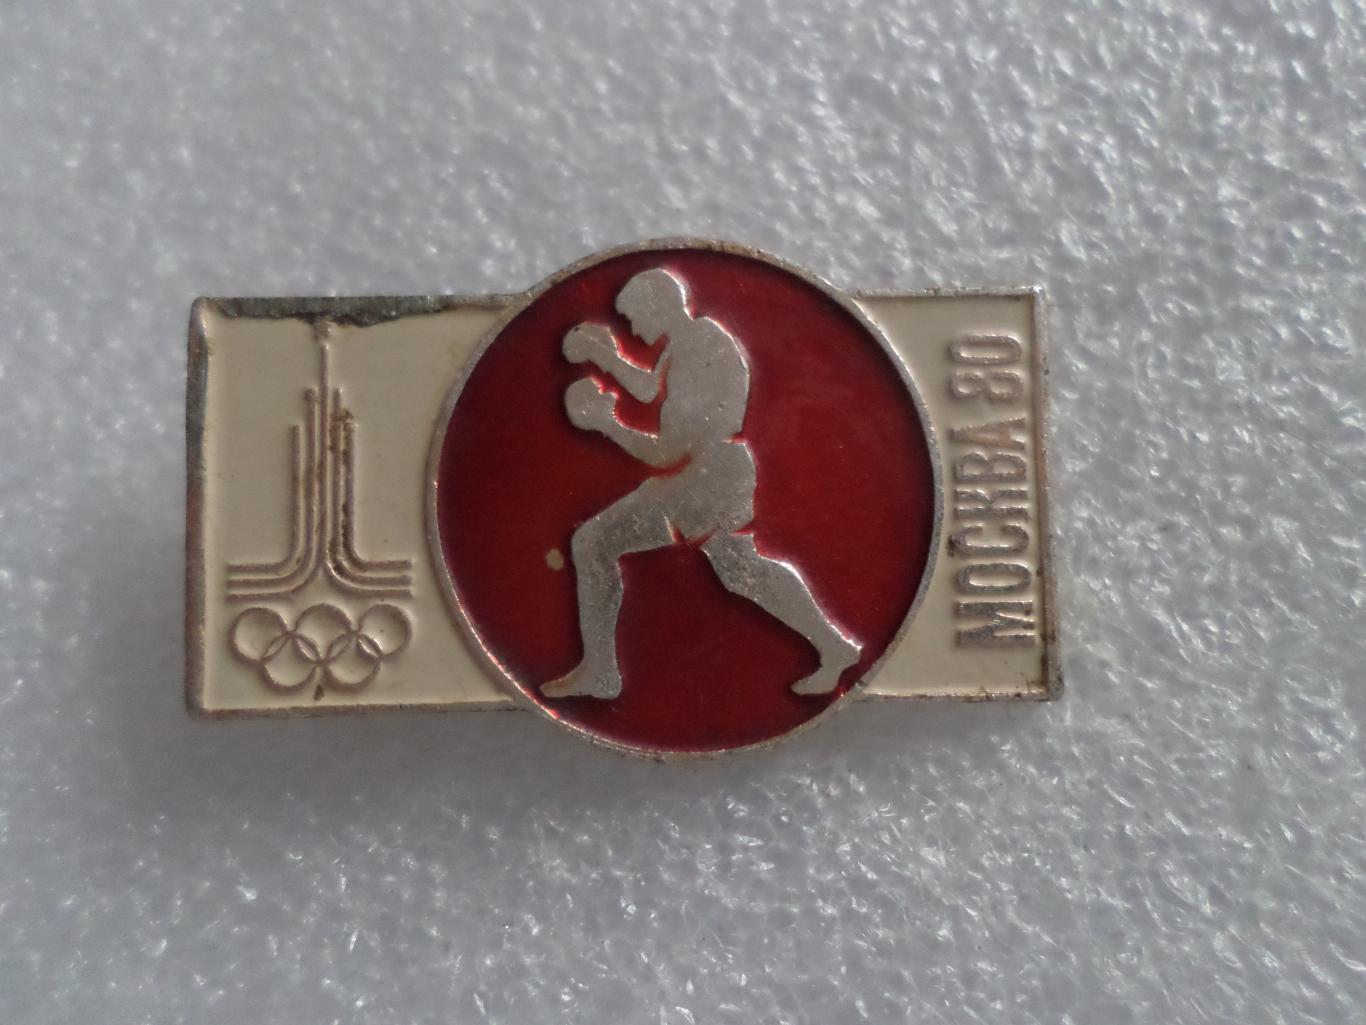 значок Олимпиада-80 Москва 1980 бокс